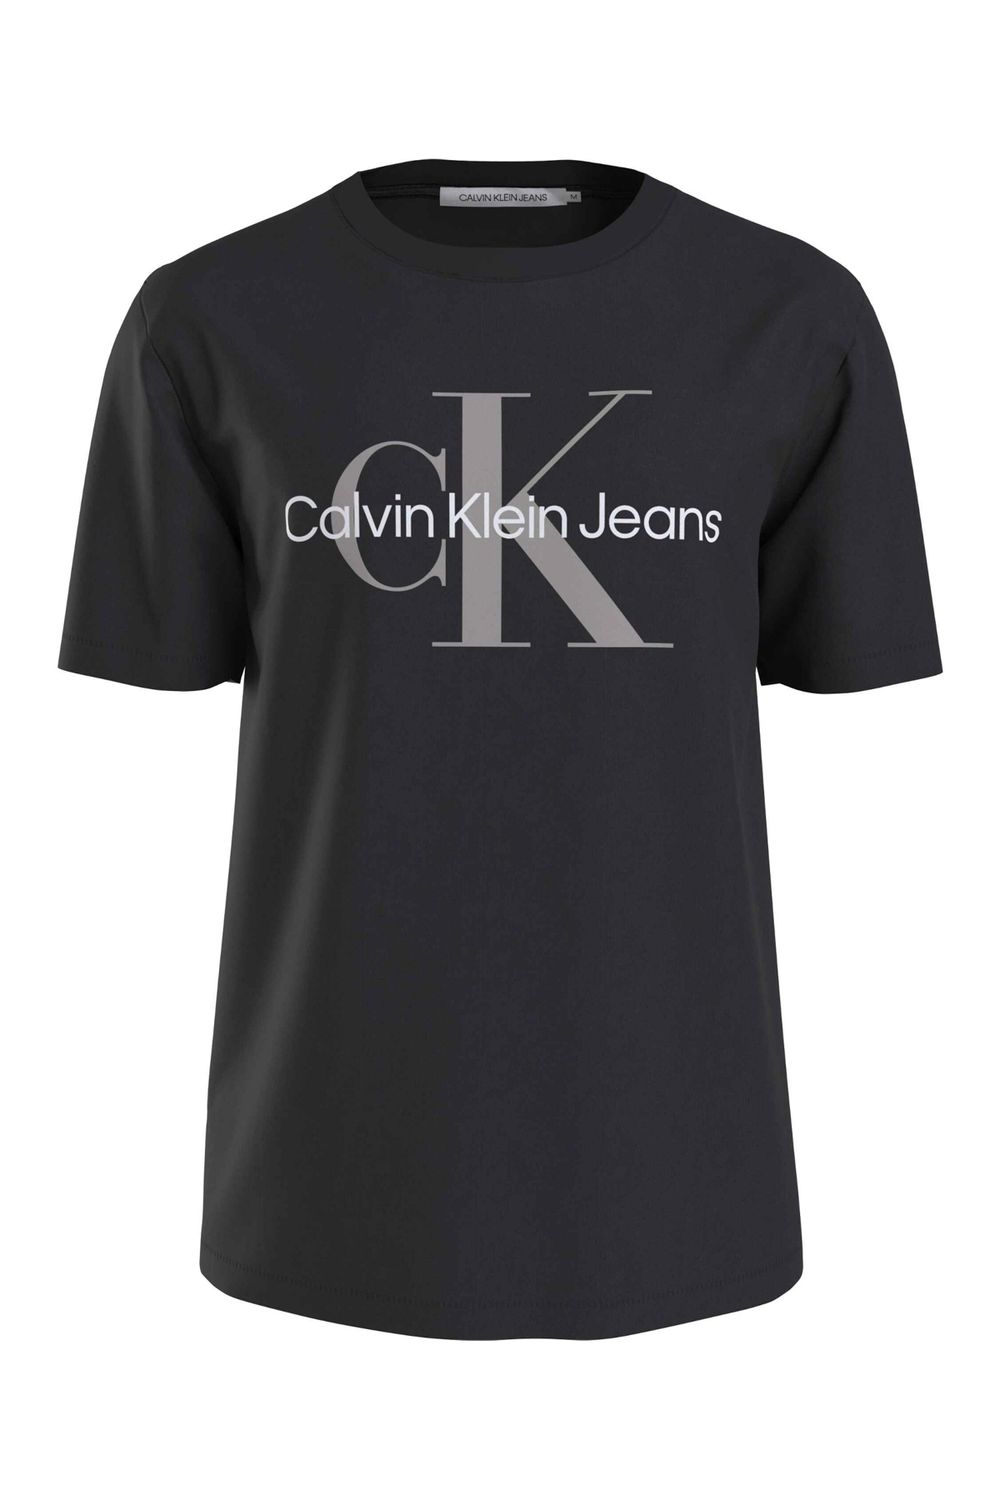 Calvin Klein T-Shirt Herren - Trendyol Schwarz/Porpoise Ck